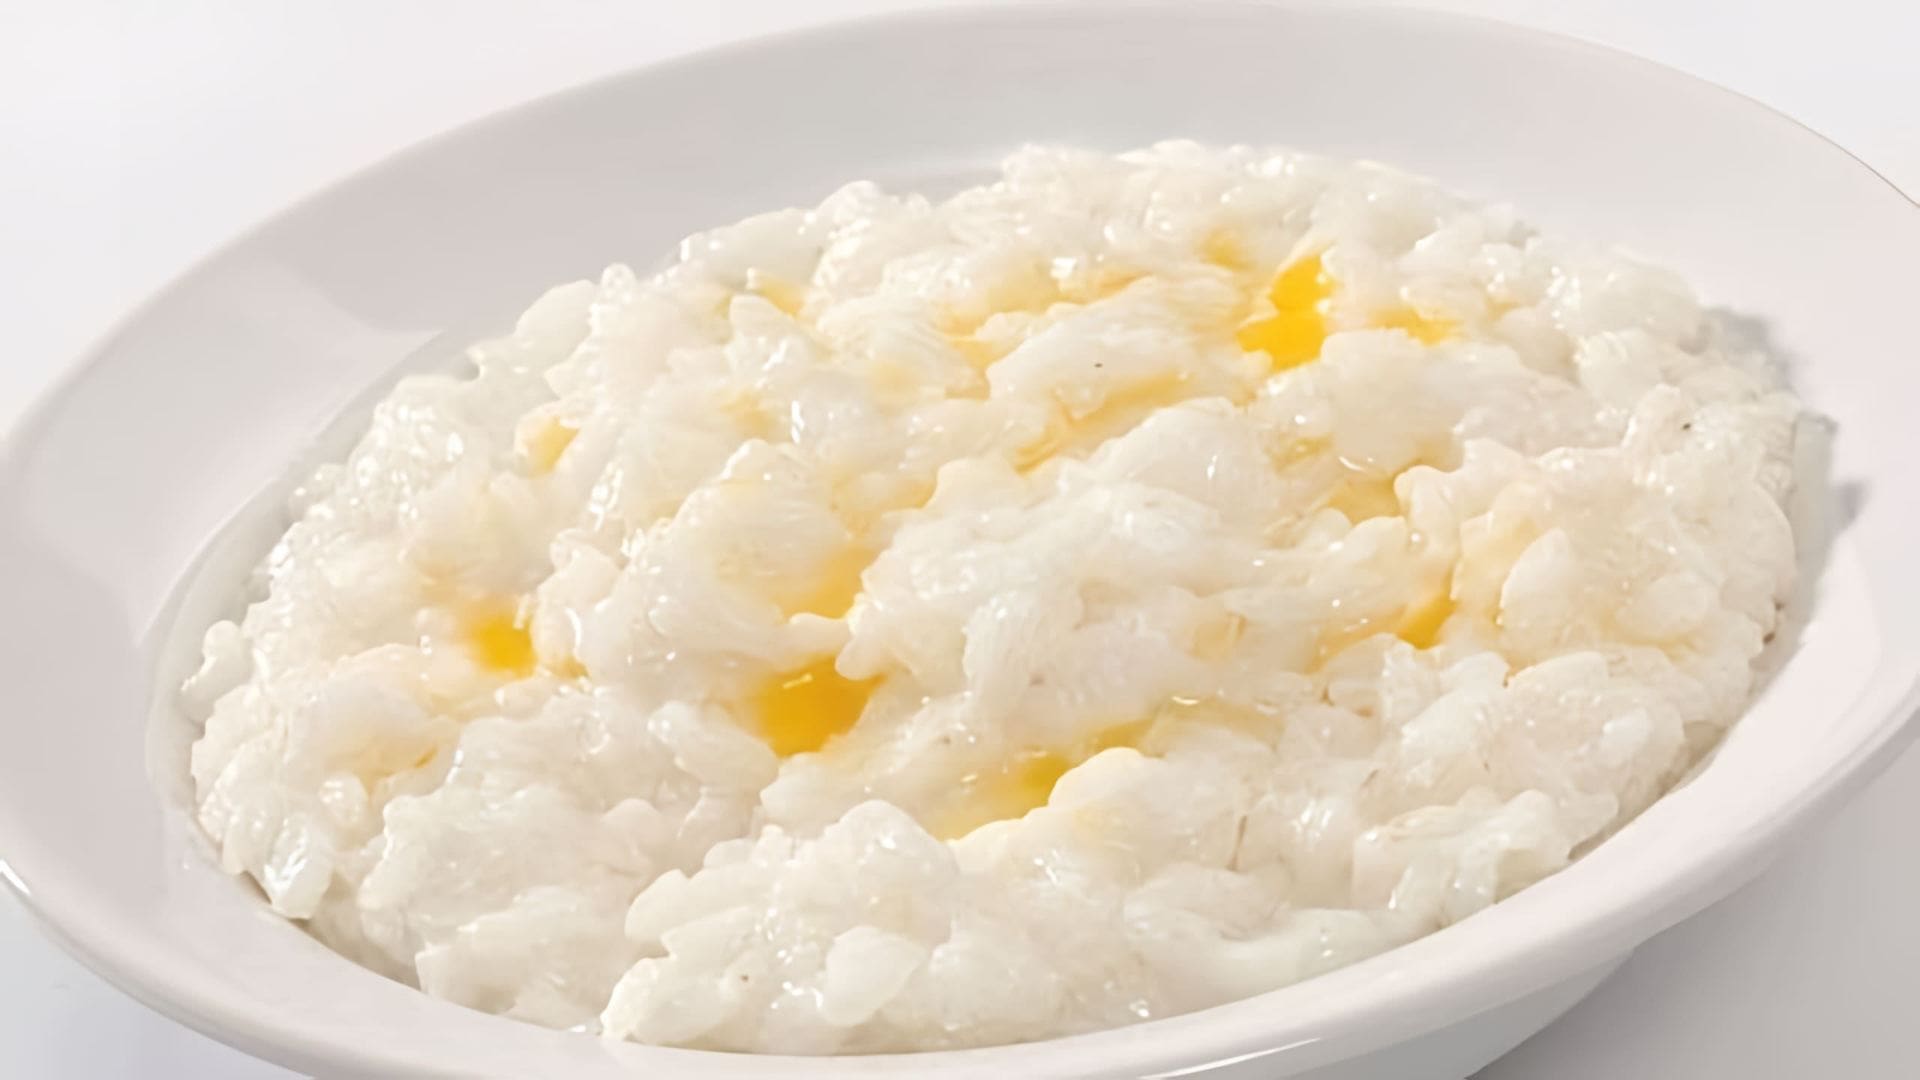 В данном видео демонстрируется процесс приготовления рисовой каши на молоке